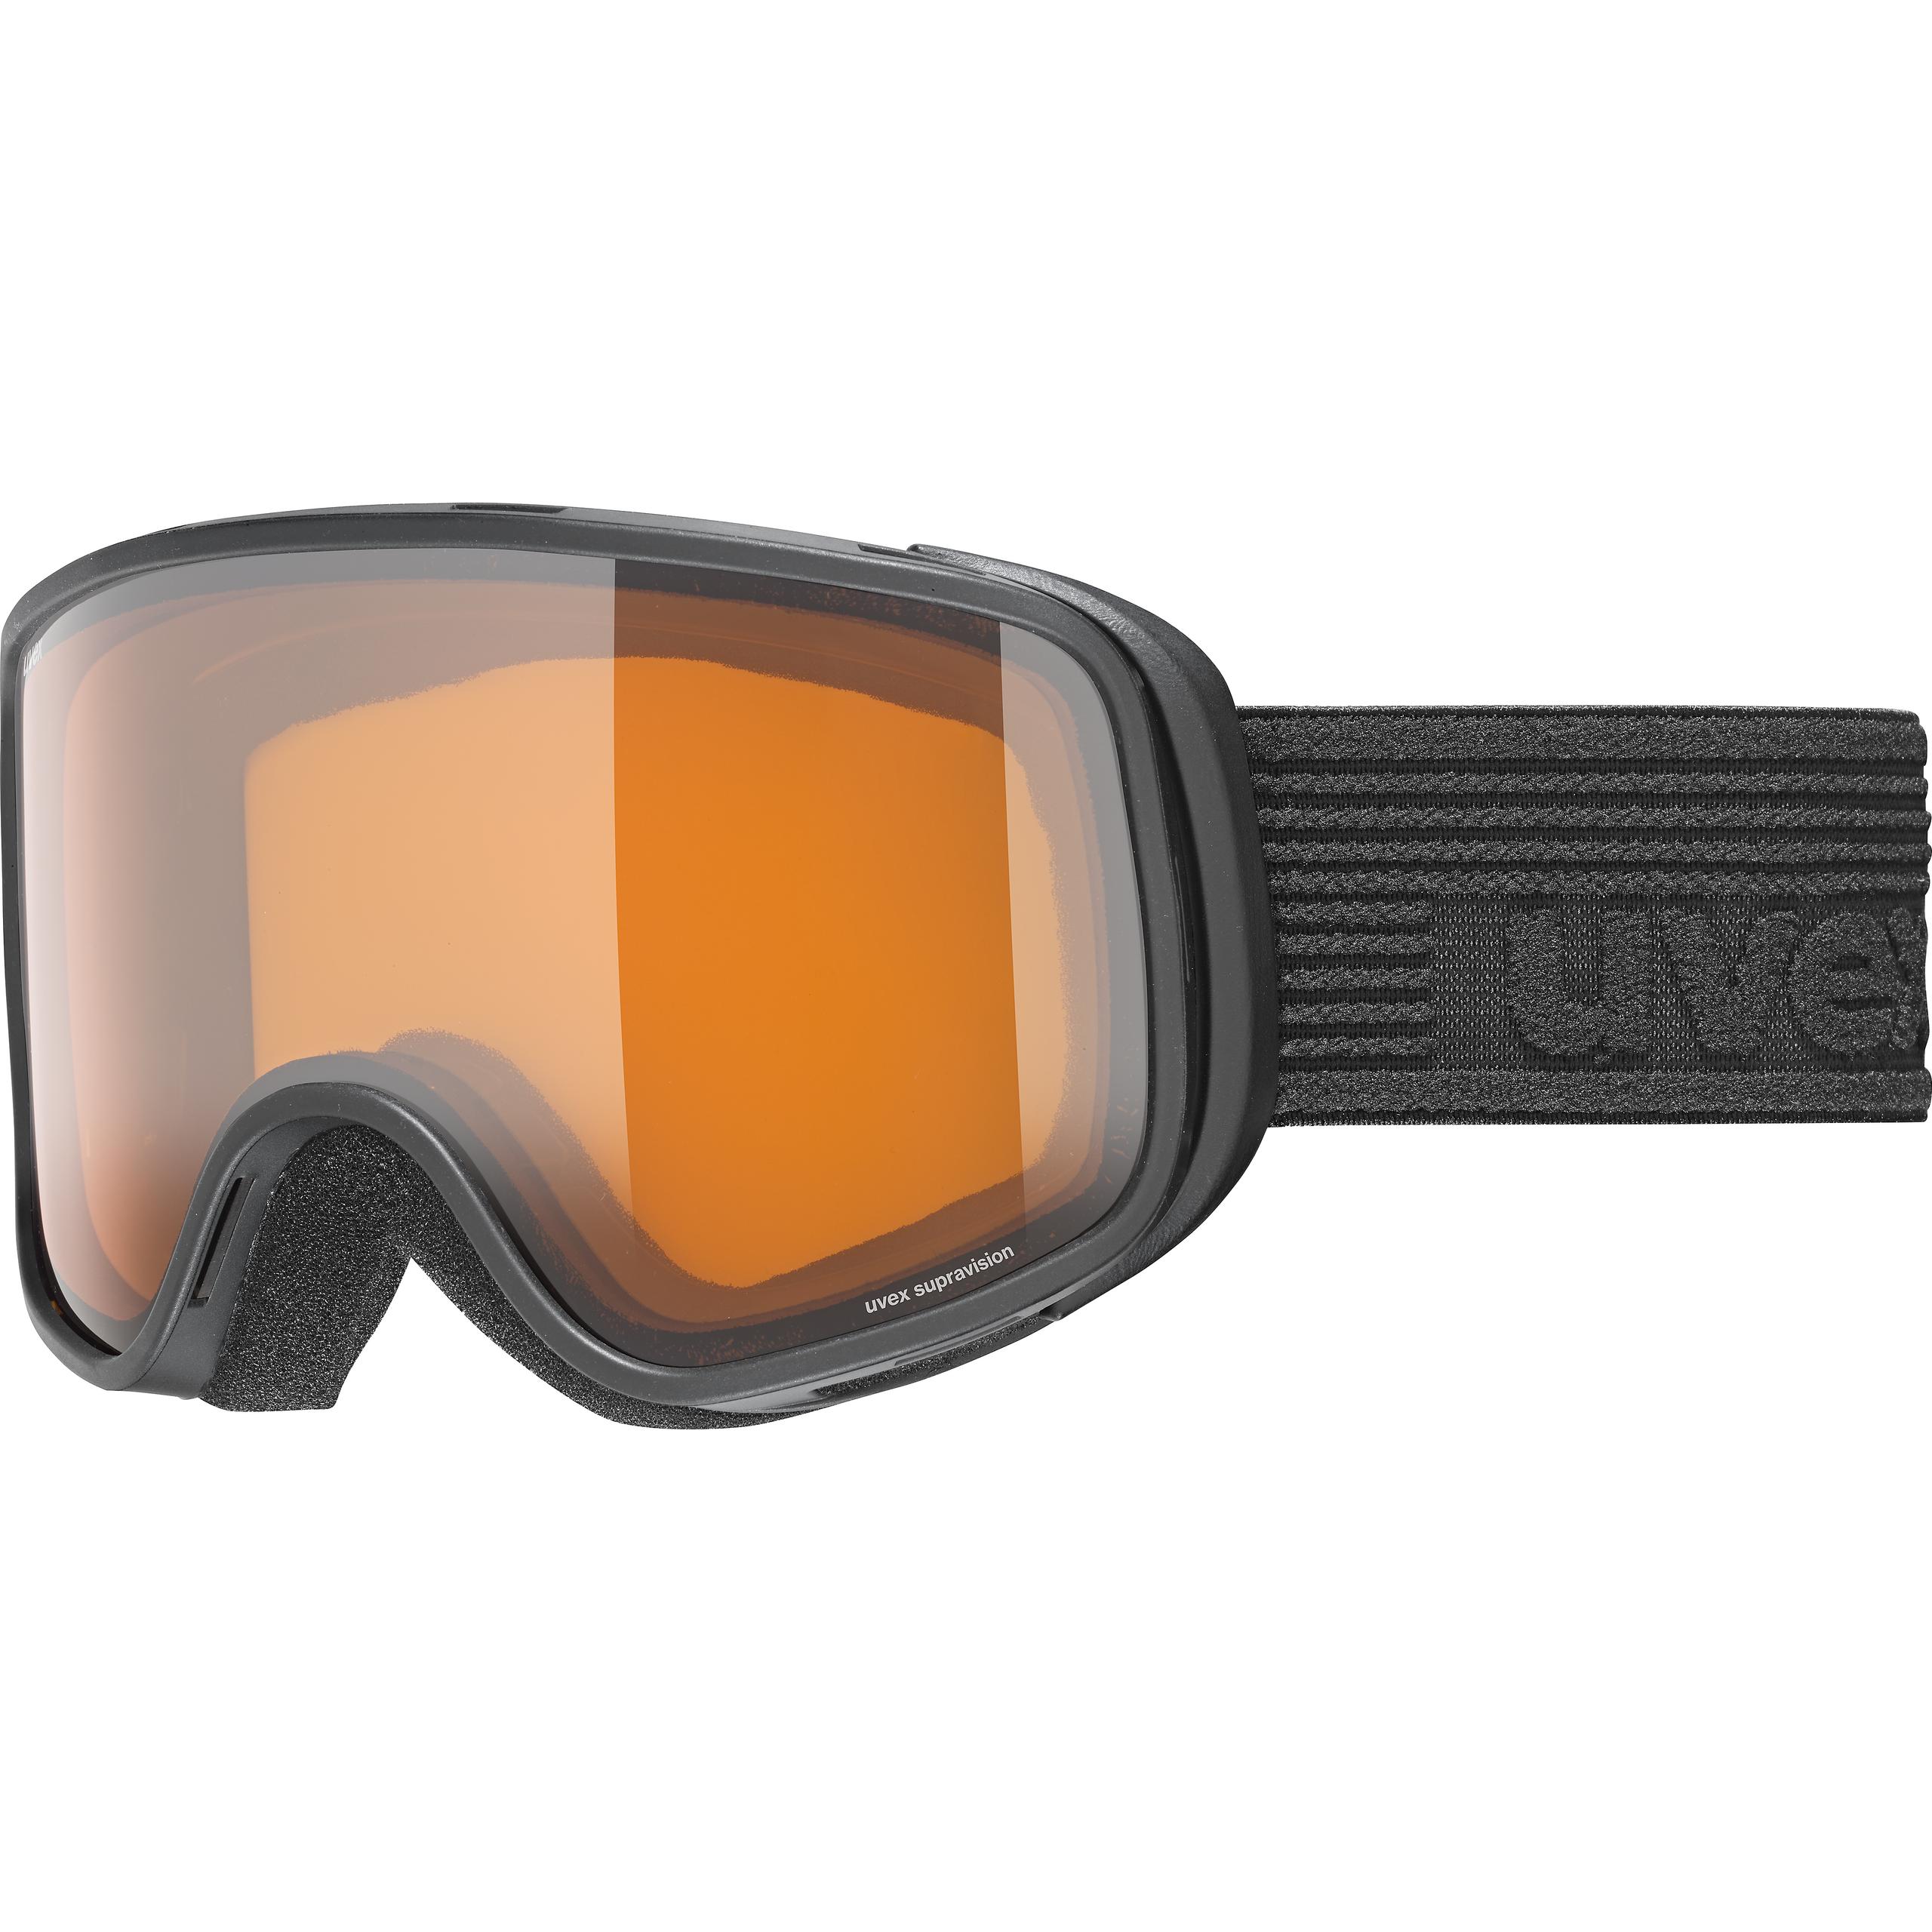 UVEX g.gl 300 POLAVISION Skibrille Snowboardbrille NEU !!! 